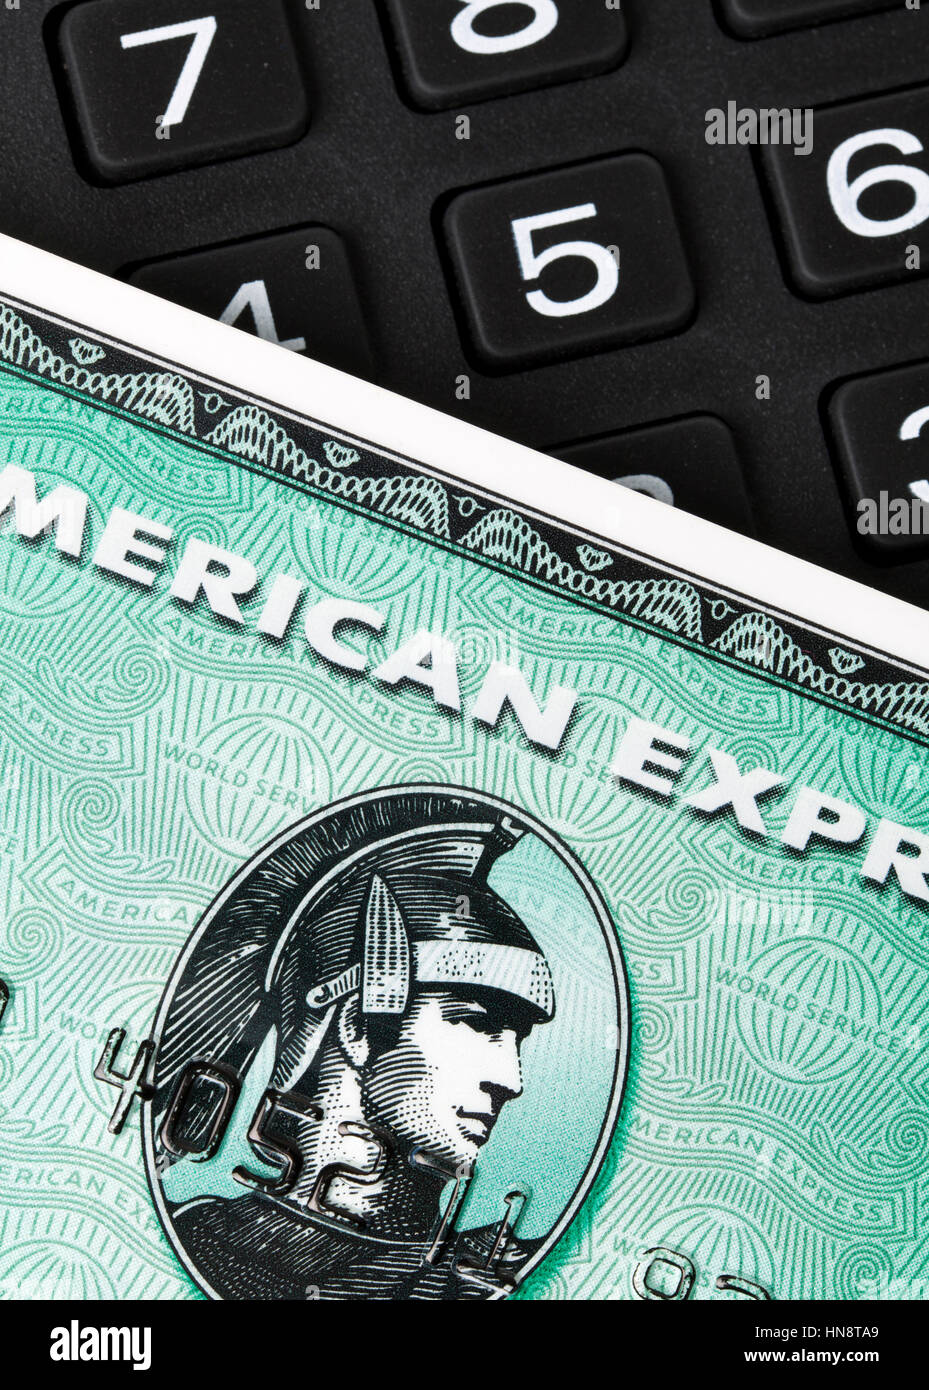 Primo piano di verde le carte di credito American Express su un tastierino numerico. AMEX è una delle maggiori società di carte di credito in tutto il mondo Foto Stock